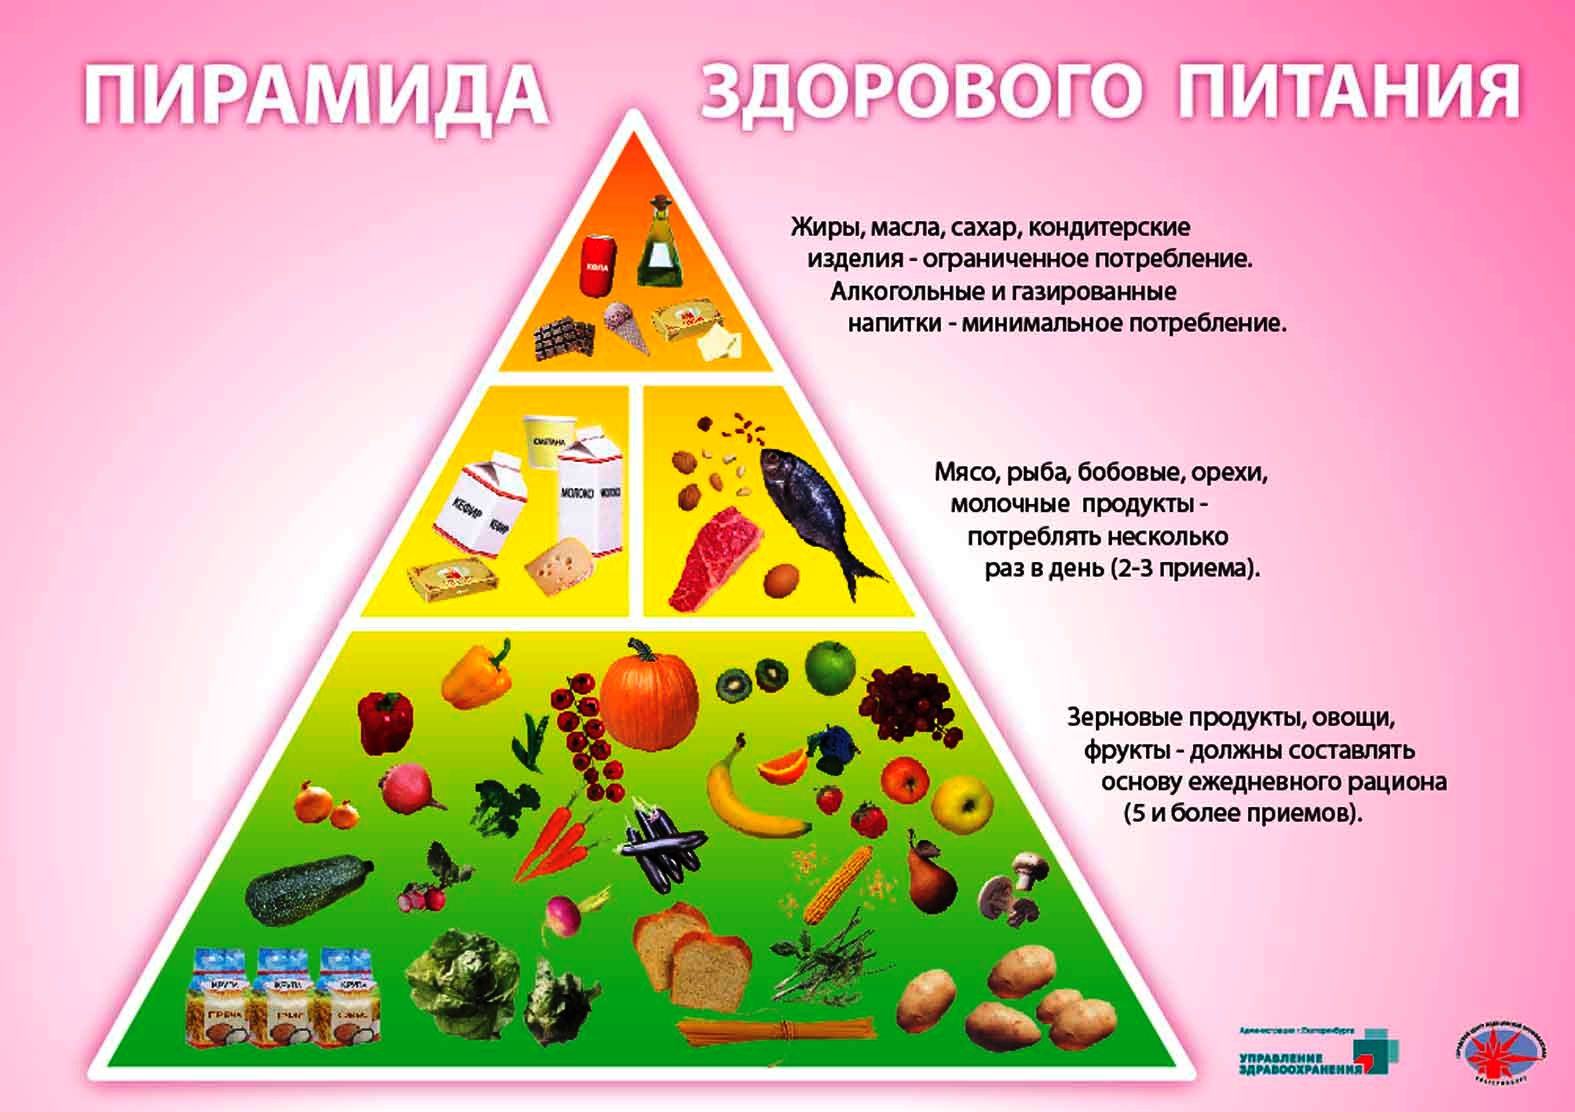 Пирамида здорового питания для дошкольников